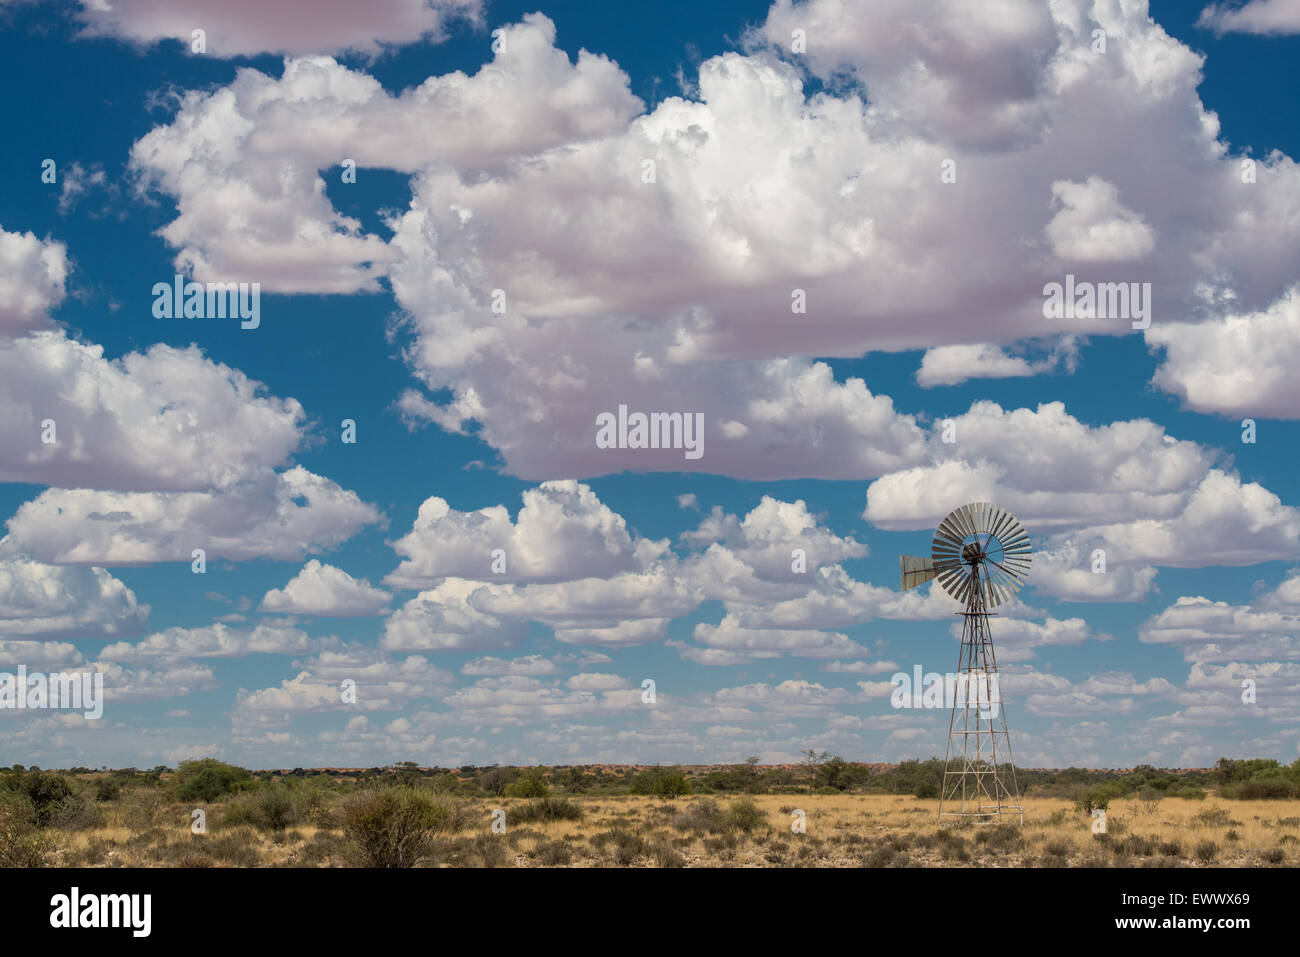 Koes Namibia, Africa - molino de viento en medio del amplio paisaje de Namibia con nubes sobrecarga Foto de stock